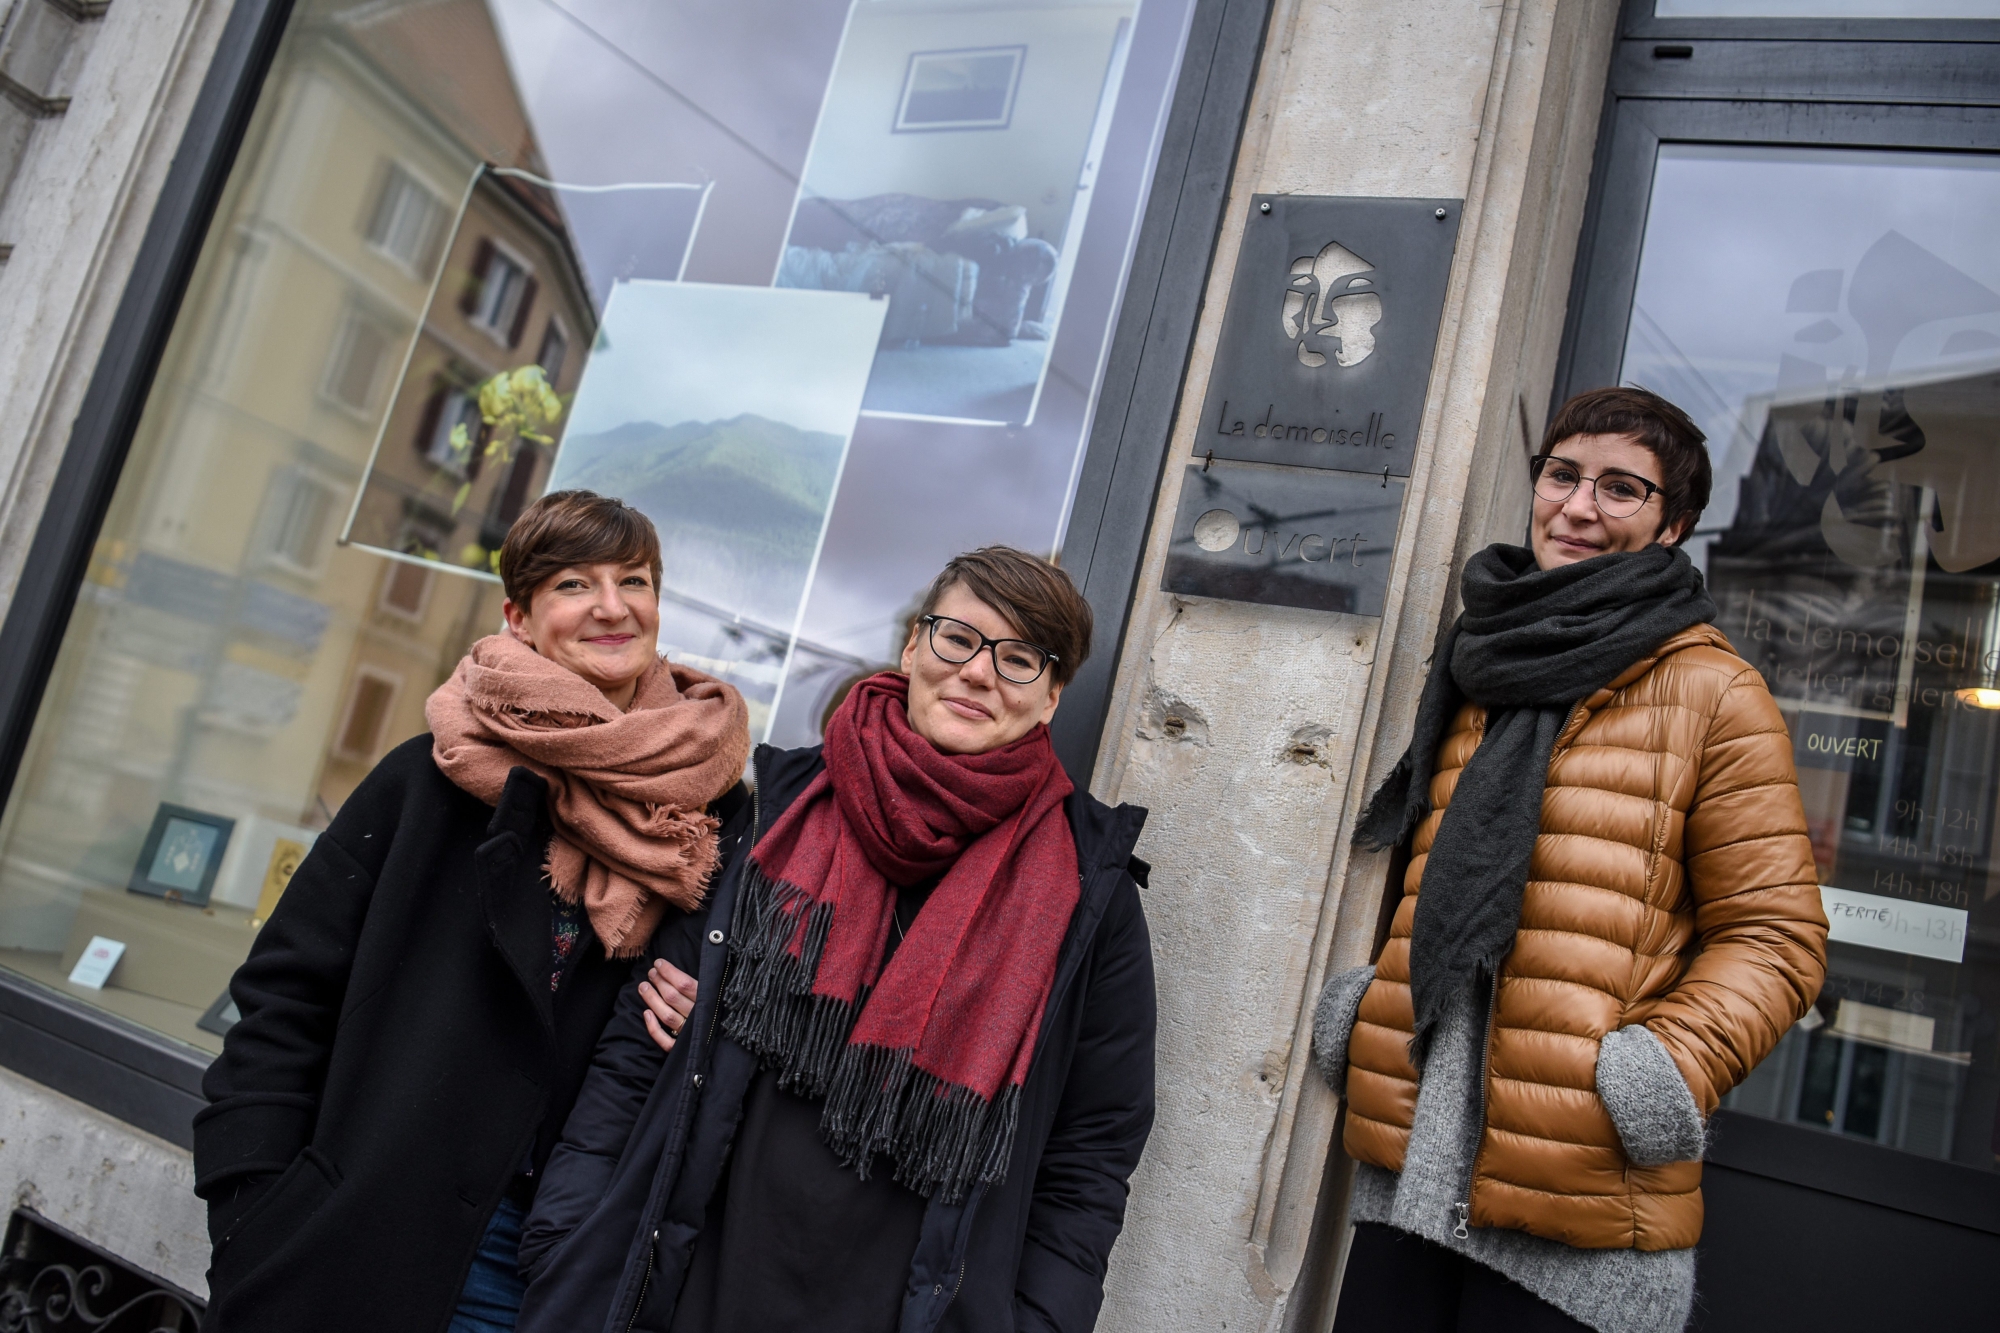 Trois des six créatrices de l'atelier galerie La Demoiselle sur leur pas de porte: Noémie Lagger, Amandine Bettinelli et Yaëlle Lässer.